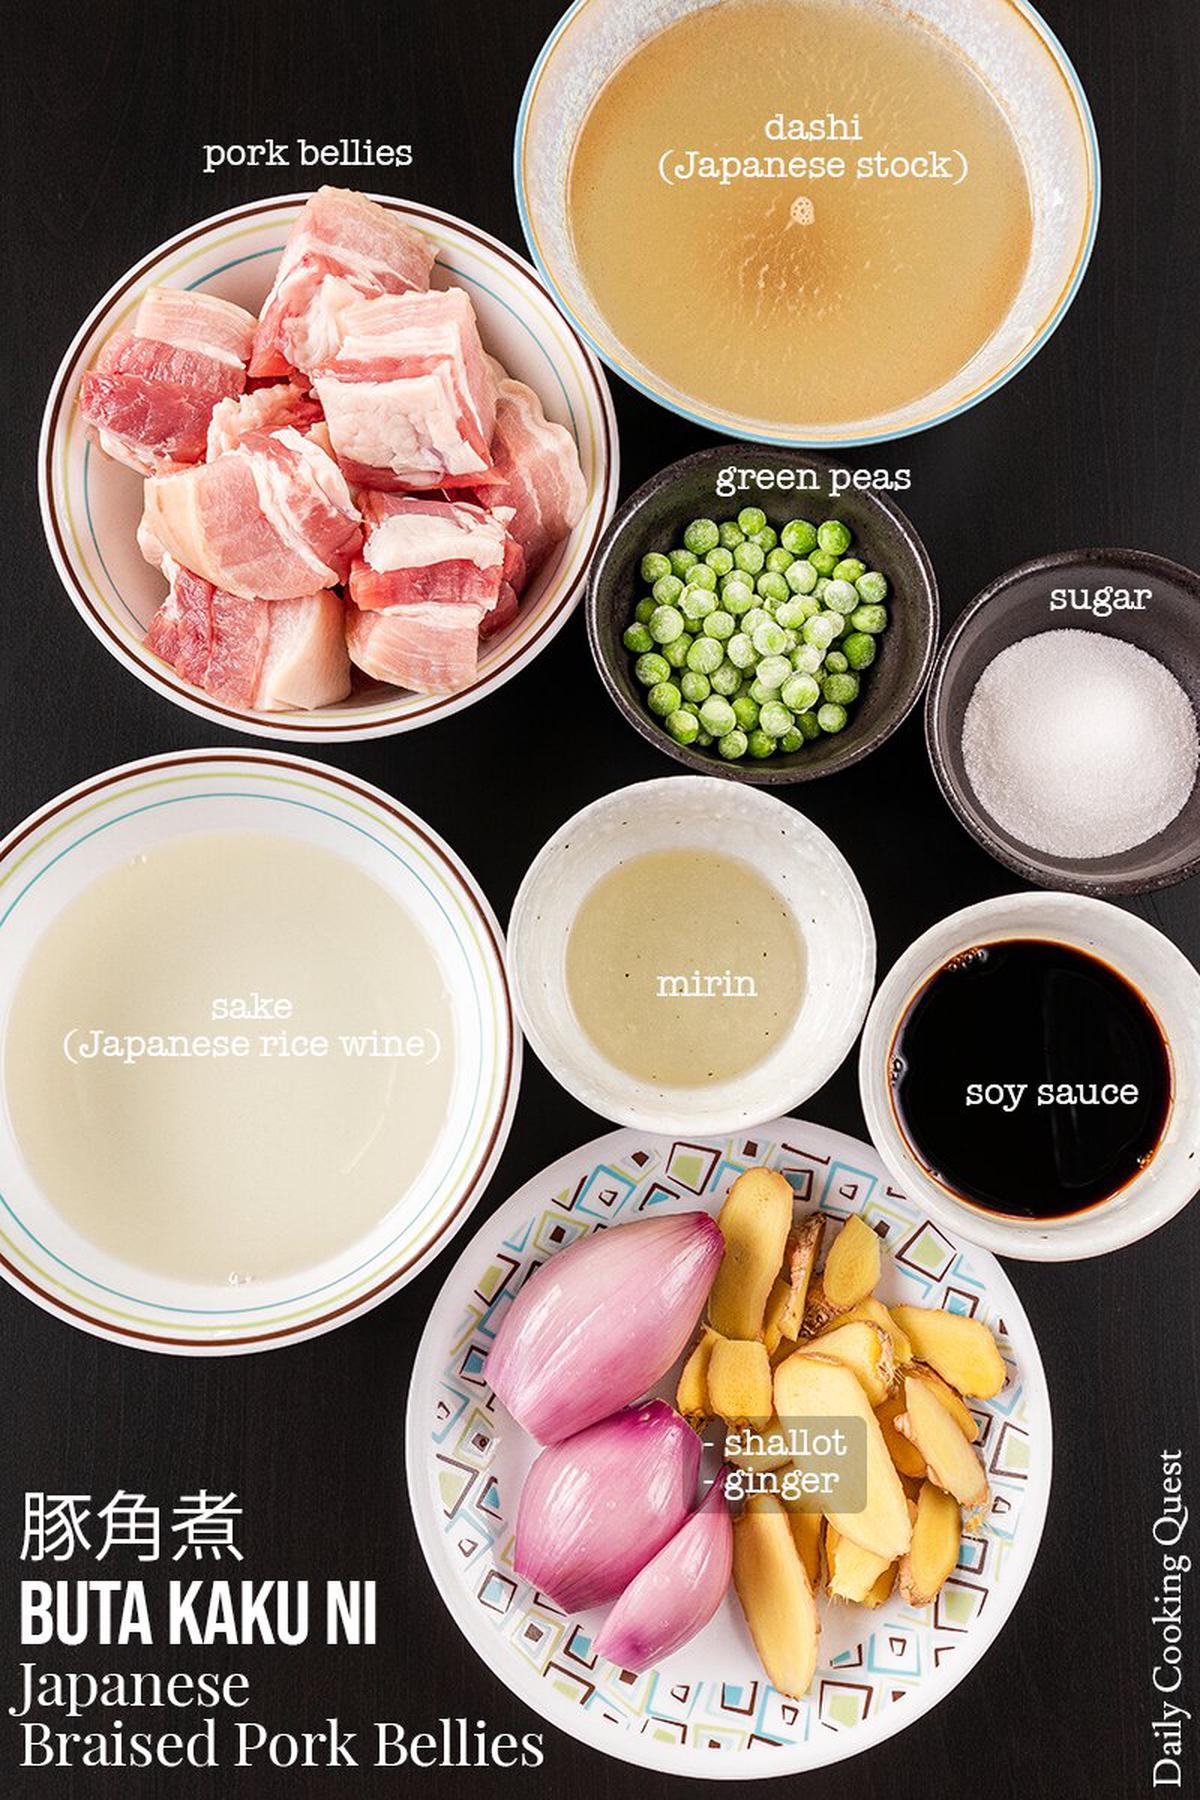 Ingredients to prepare Japanese braised pork (buta kaku ni): pork belly cubes, green peas, shallot, ginger, dashi (Japanese stock), sake (Japanese rice wine), mirin, soy sauce, and sugar.